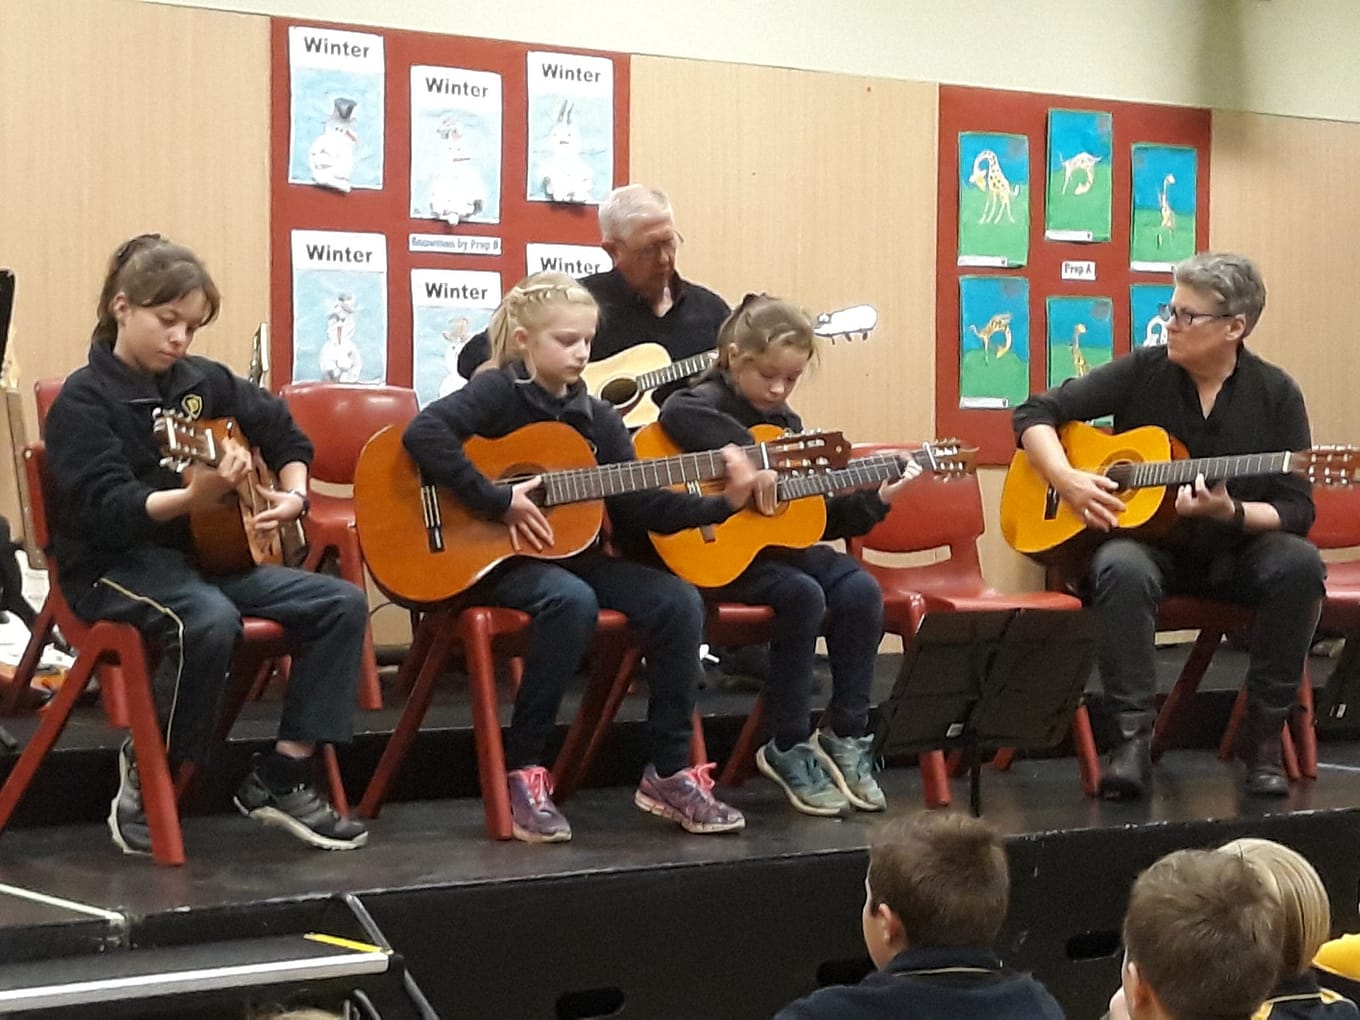 Music at Deloraine Primary School